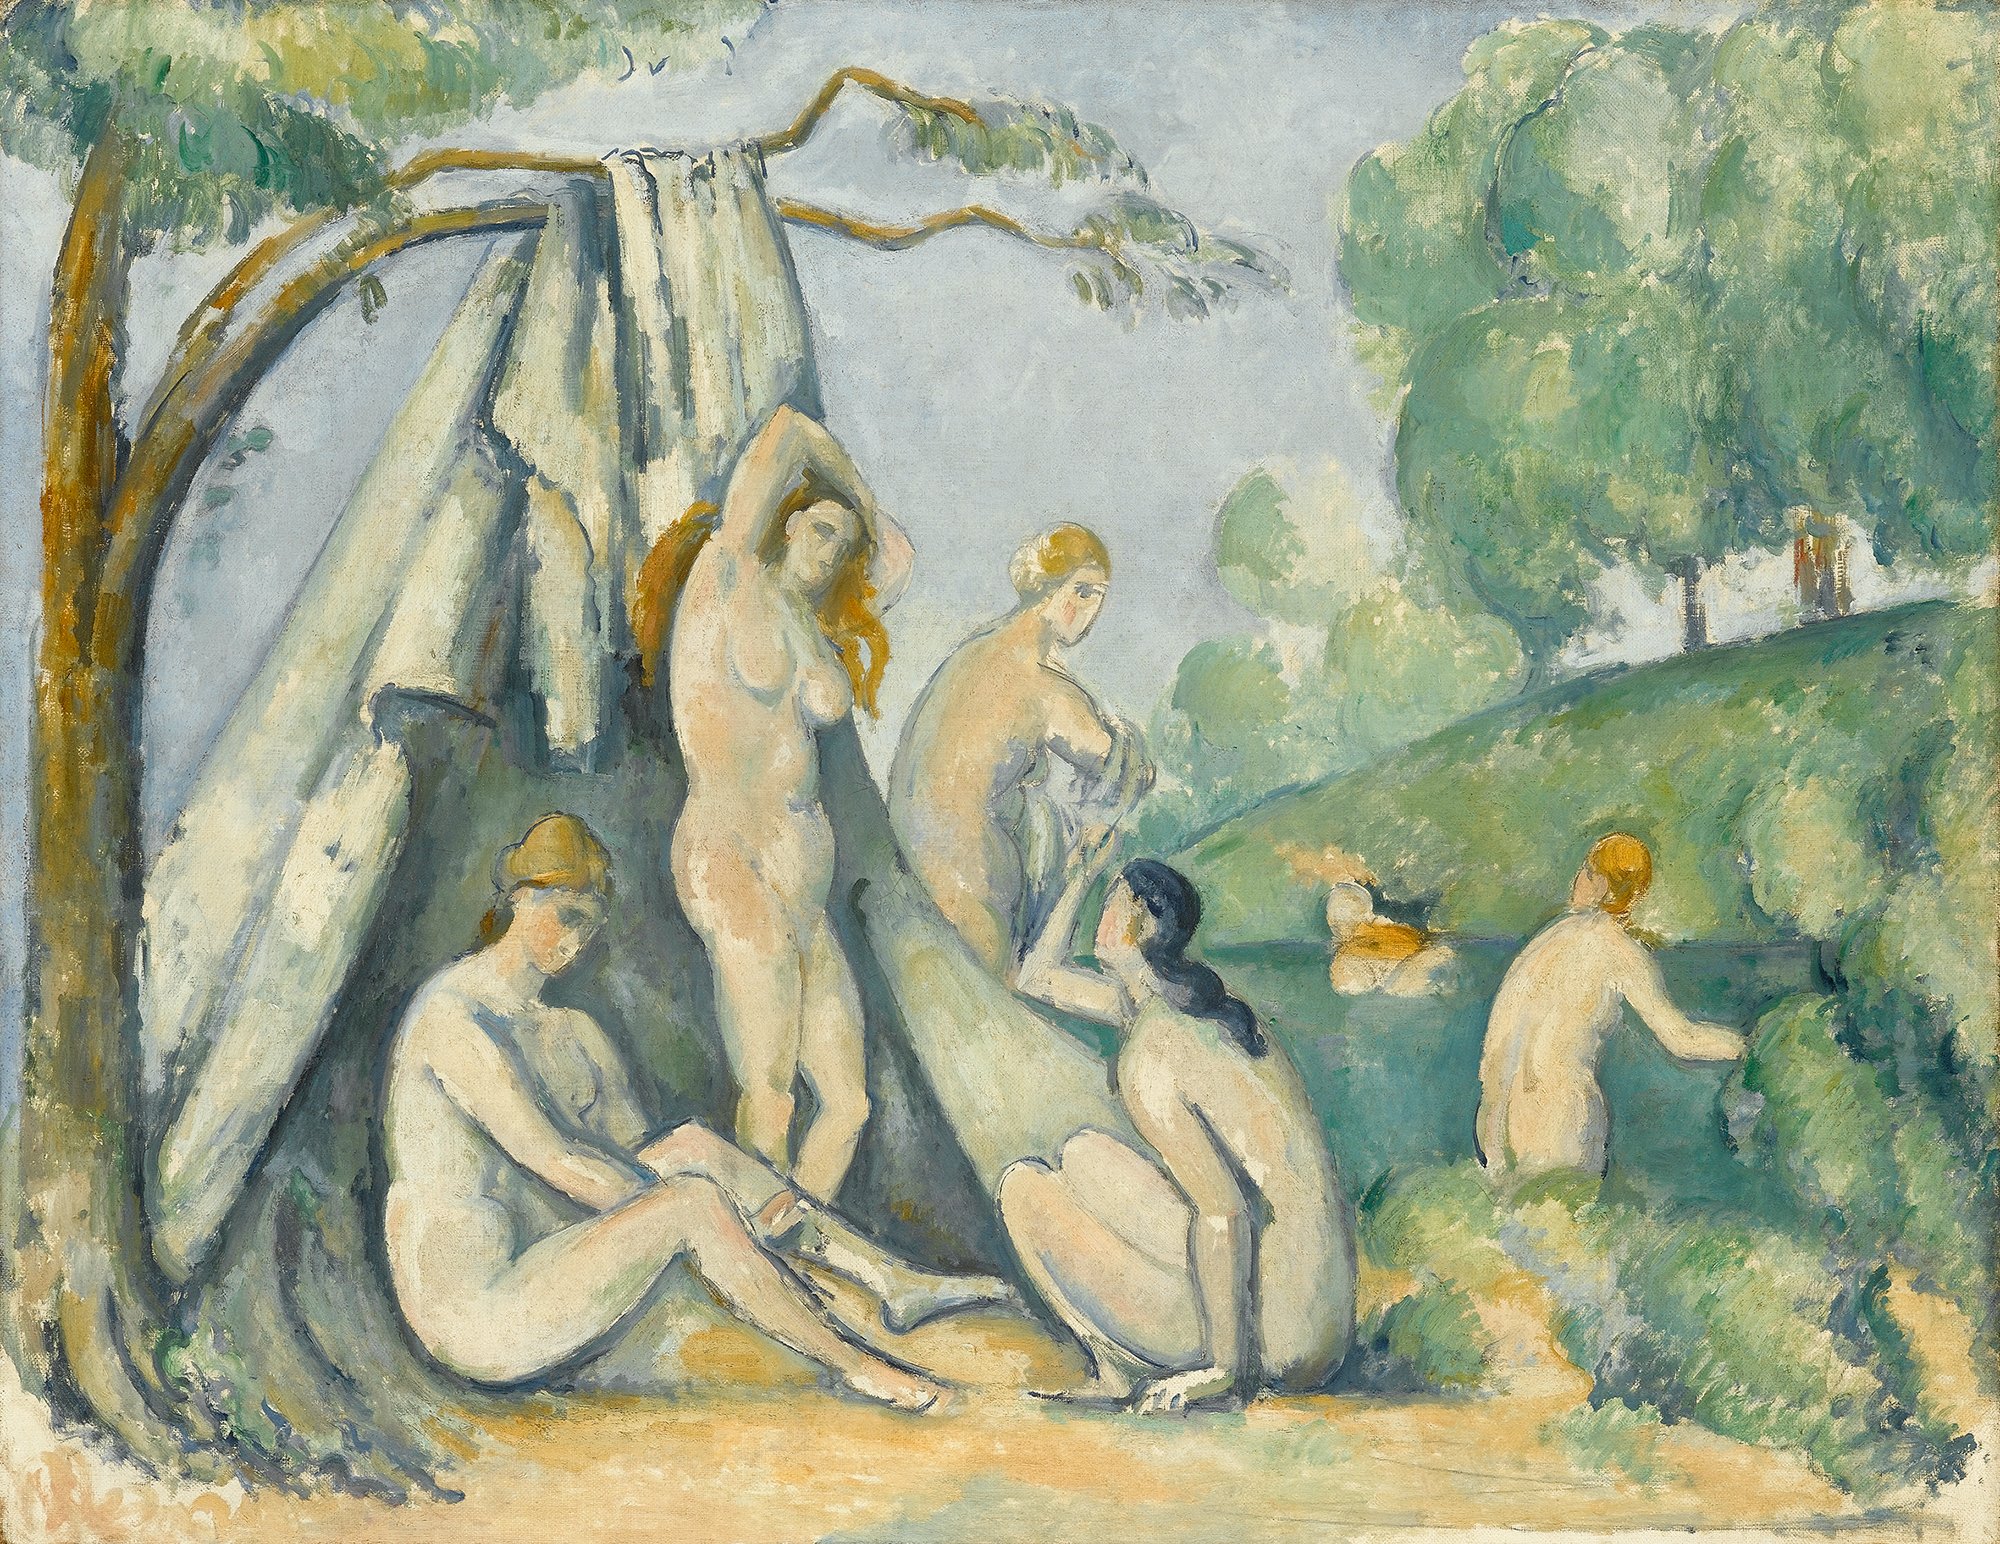 Das Kunstwerk Cézannes "Badende vor einem Zelt" zeigt sechs Frauen in einem Fluss badend.